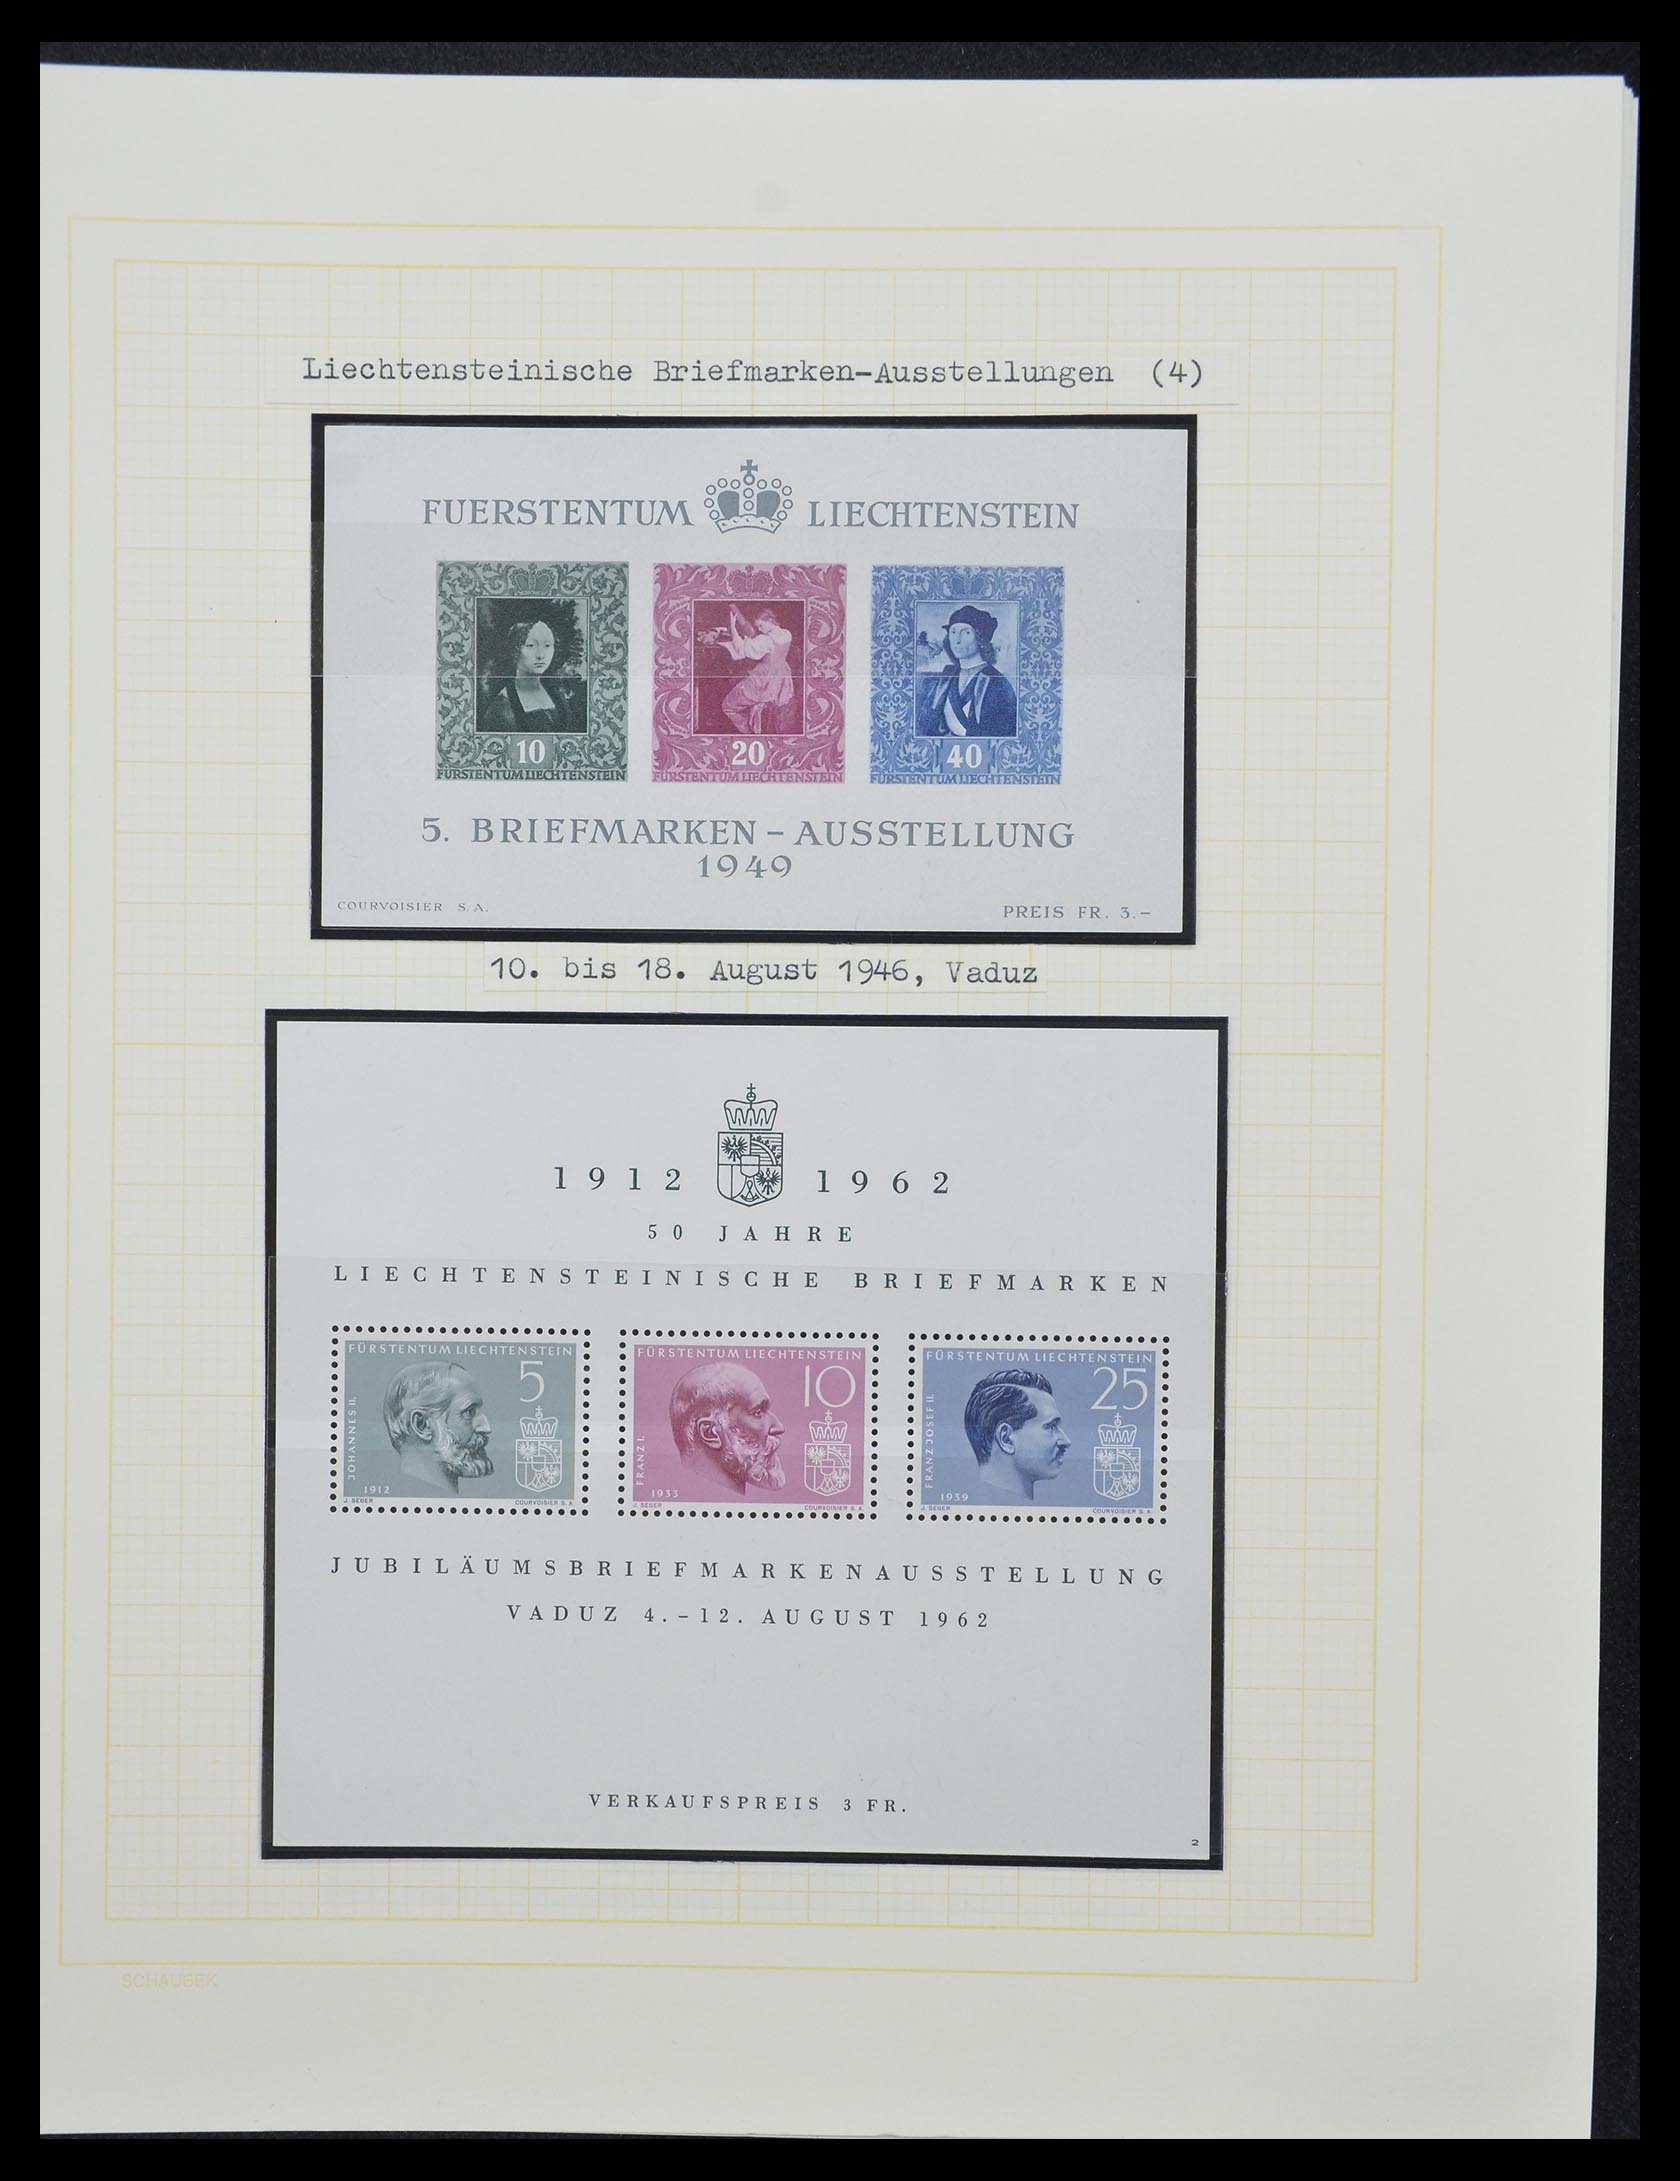 33138 127 - Stamp collection 33138 Liechtenstein 1912-2002.